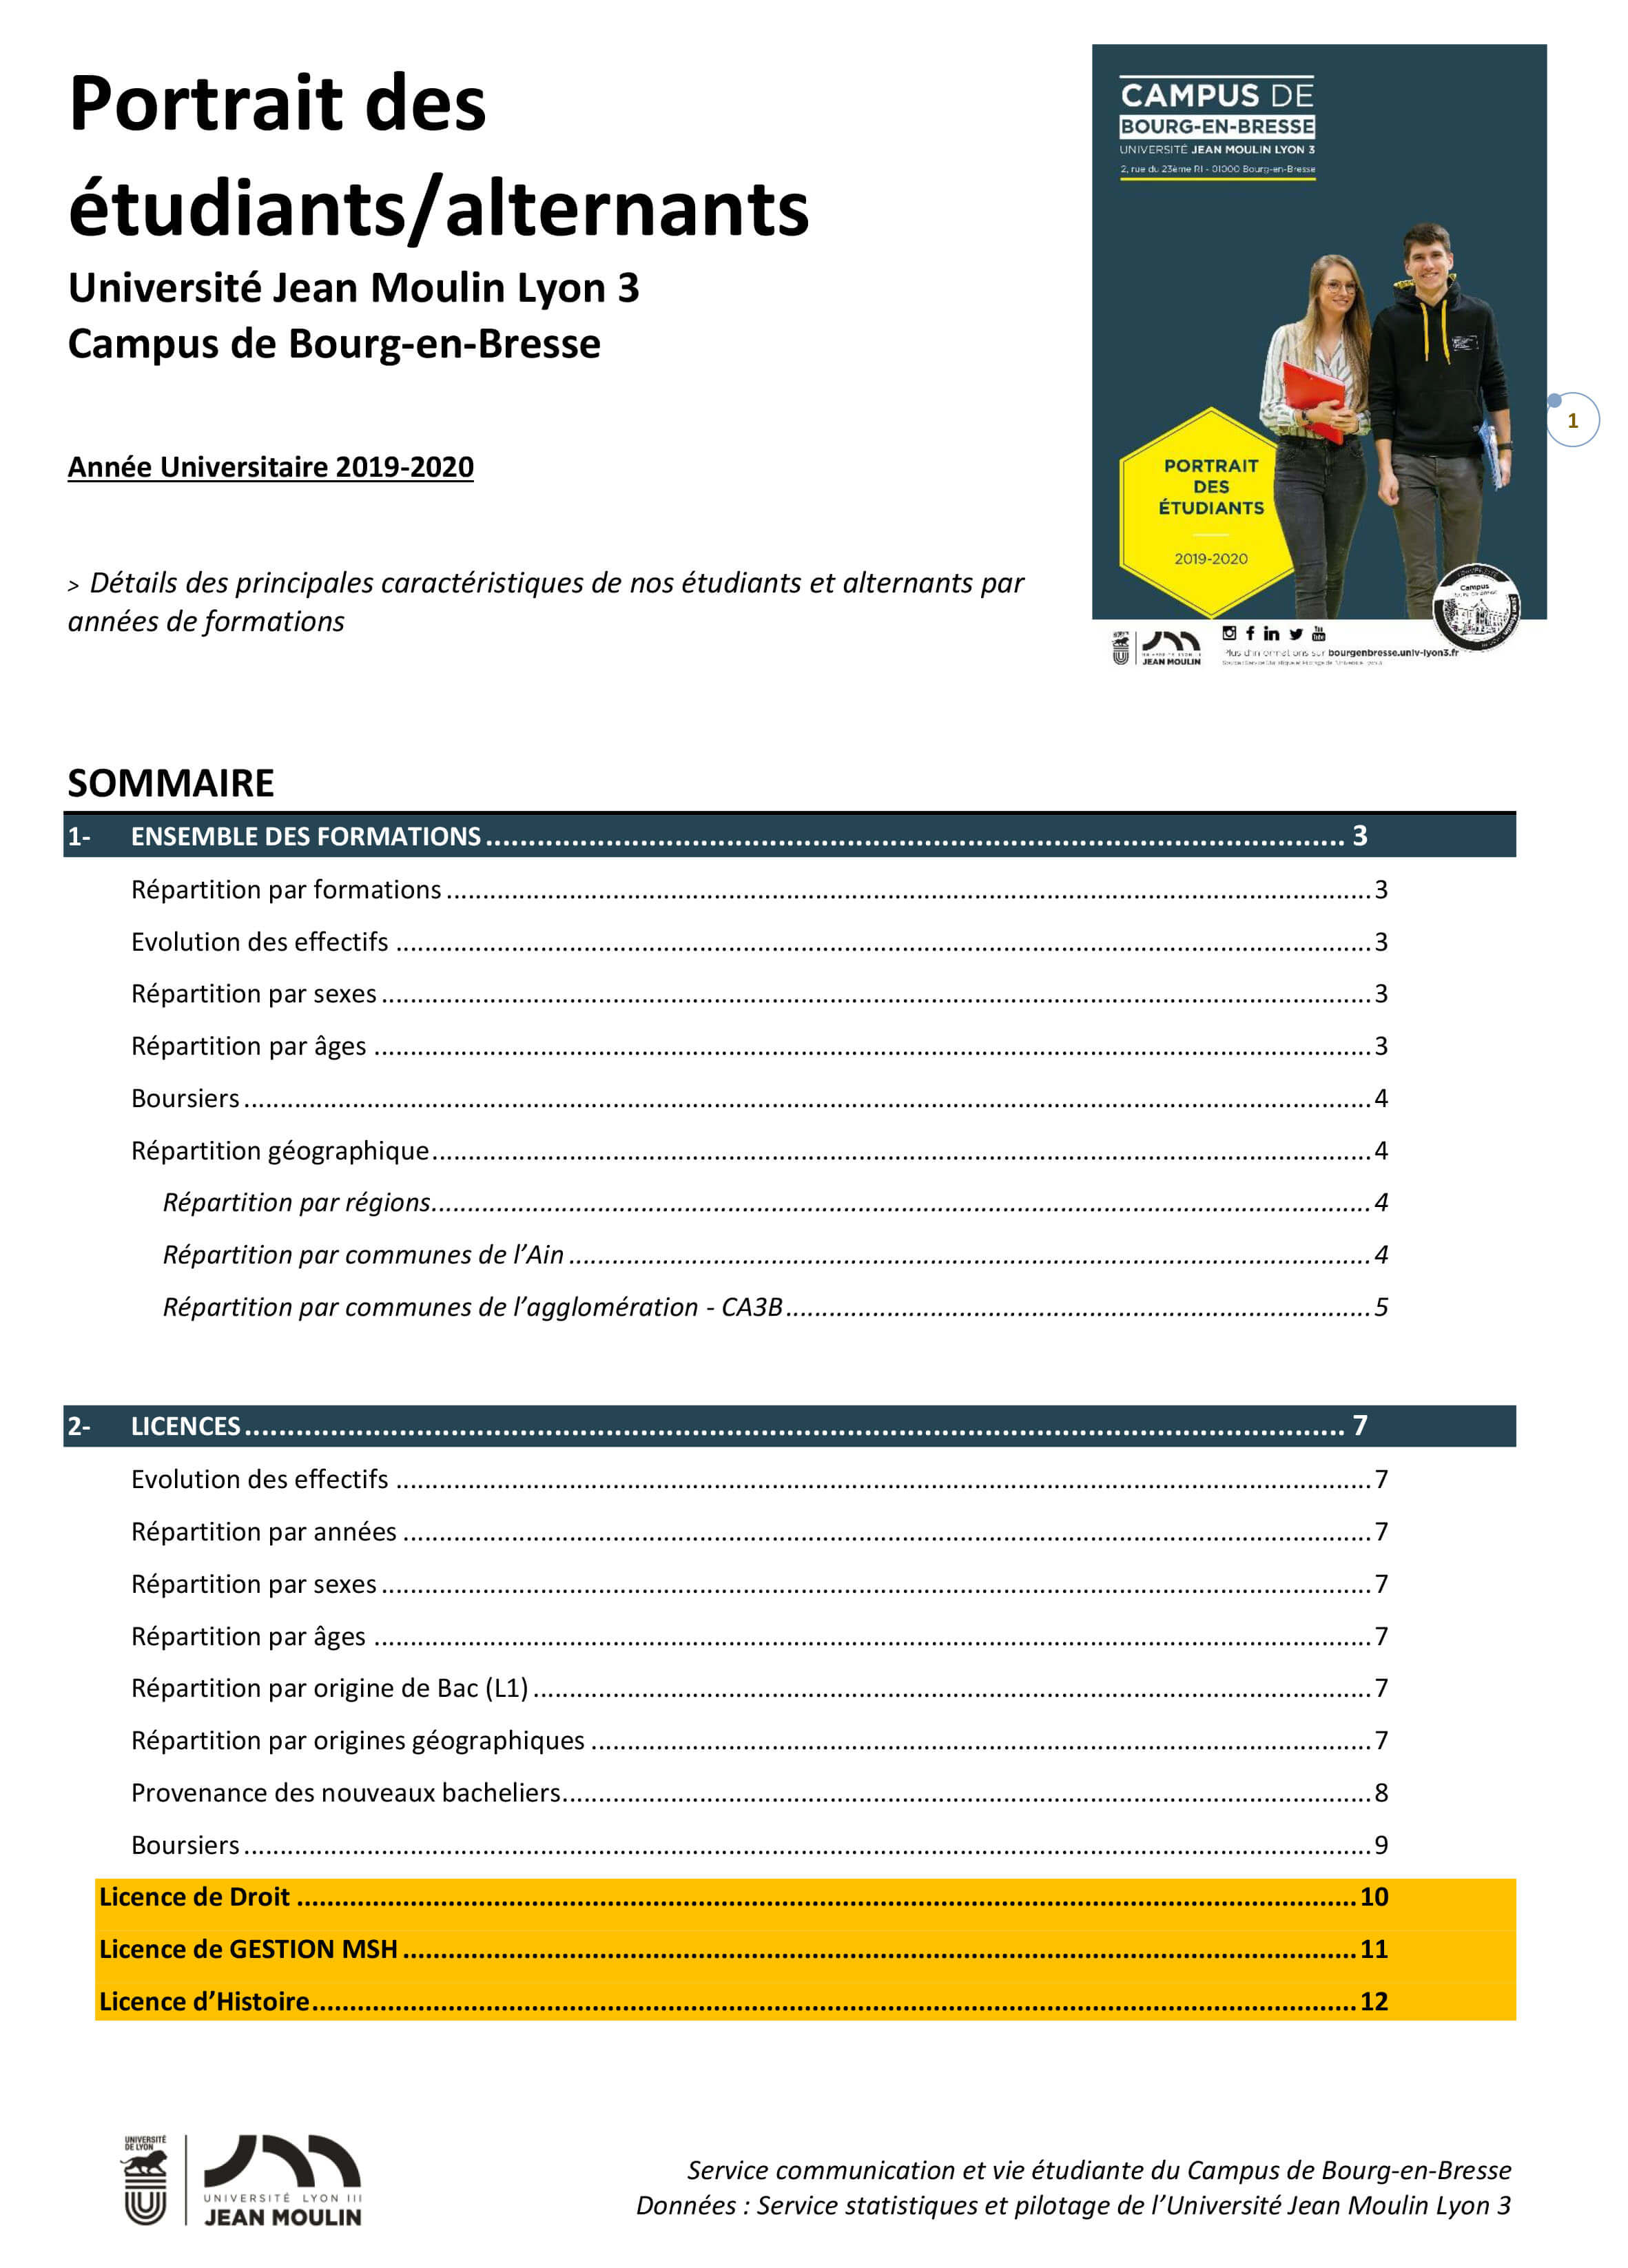 Effectifs détaillés par formations prposées à Bourg-en-Bresse